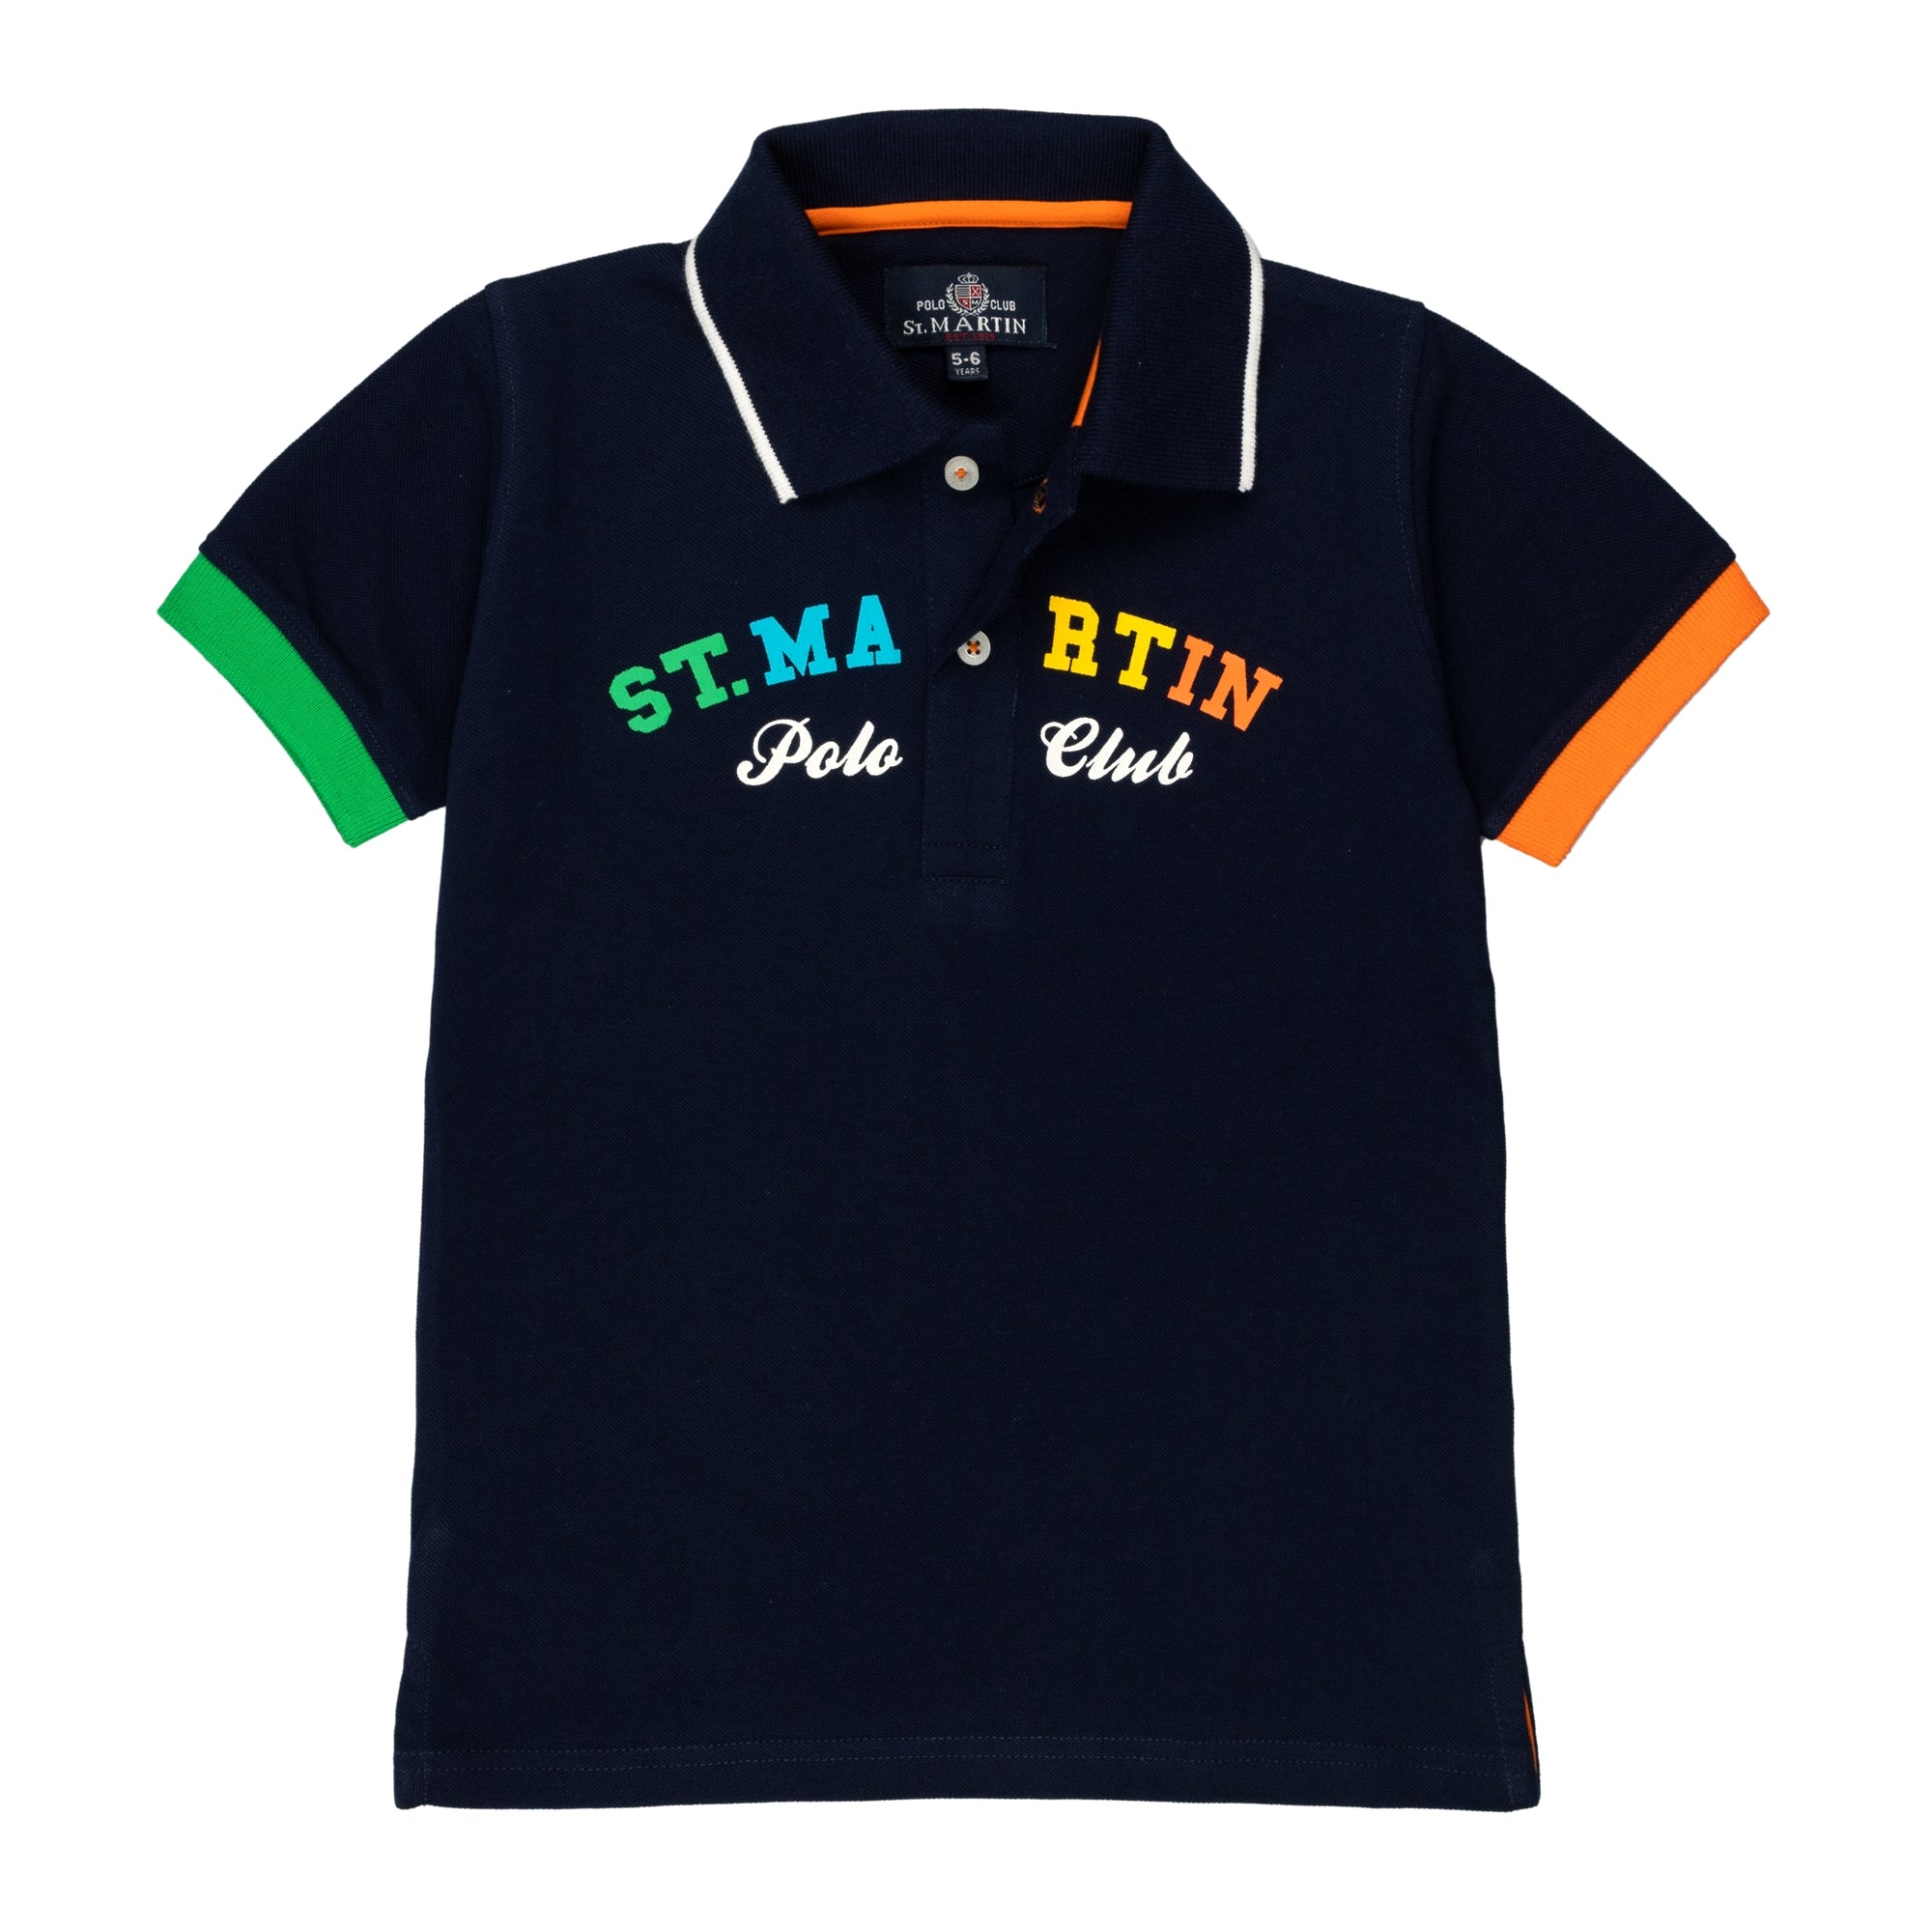 Piqué polo shirt with multicolor logo print